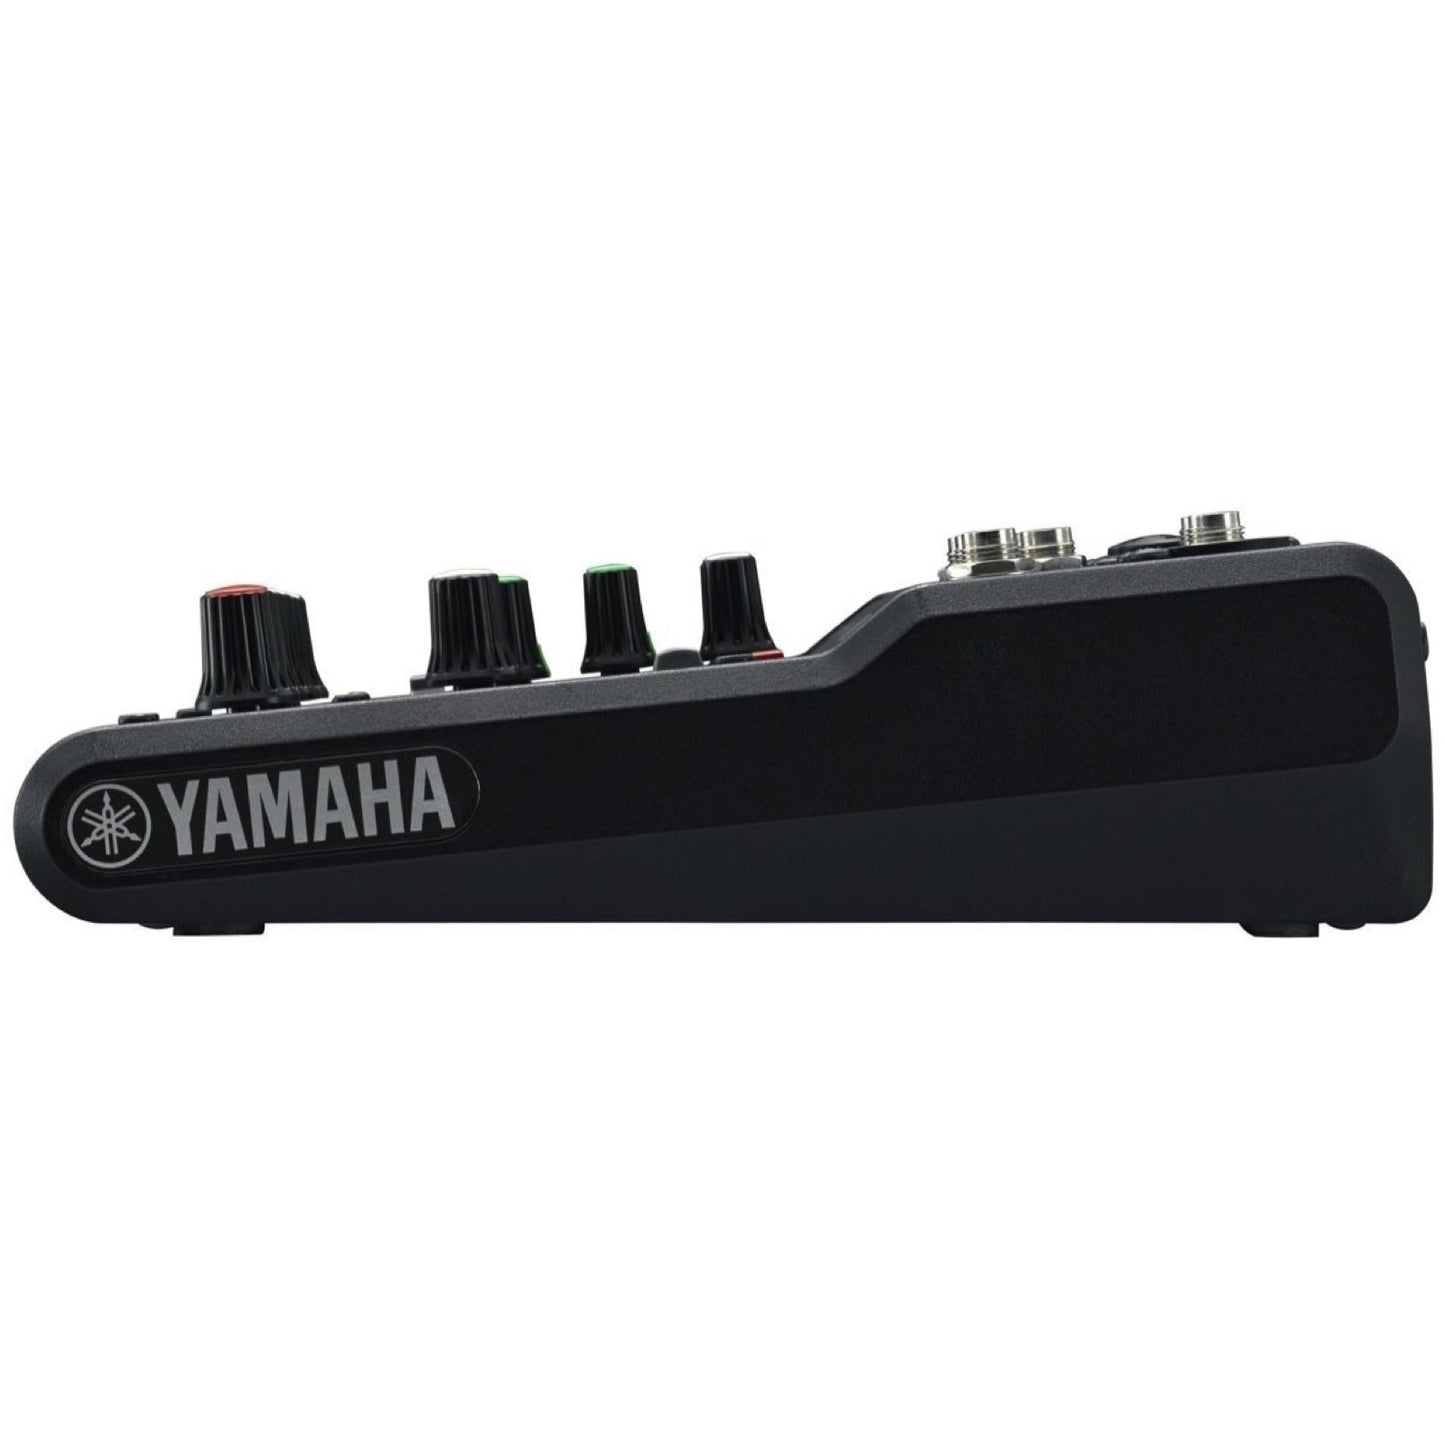 Yamaha MG06 Stereo Mixer